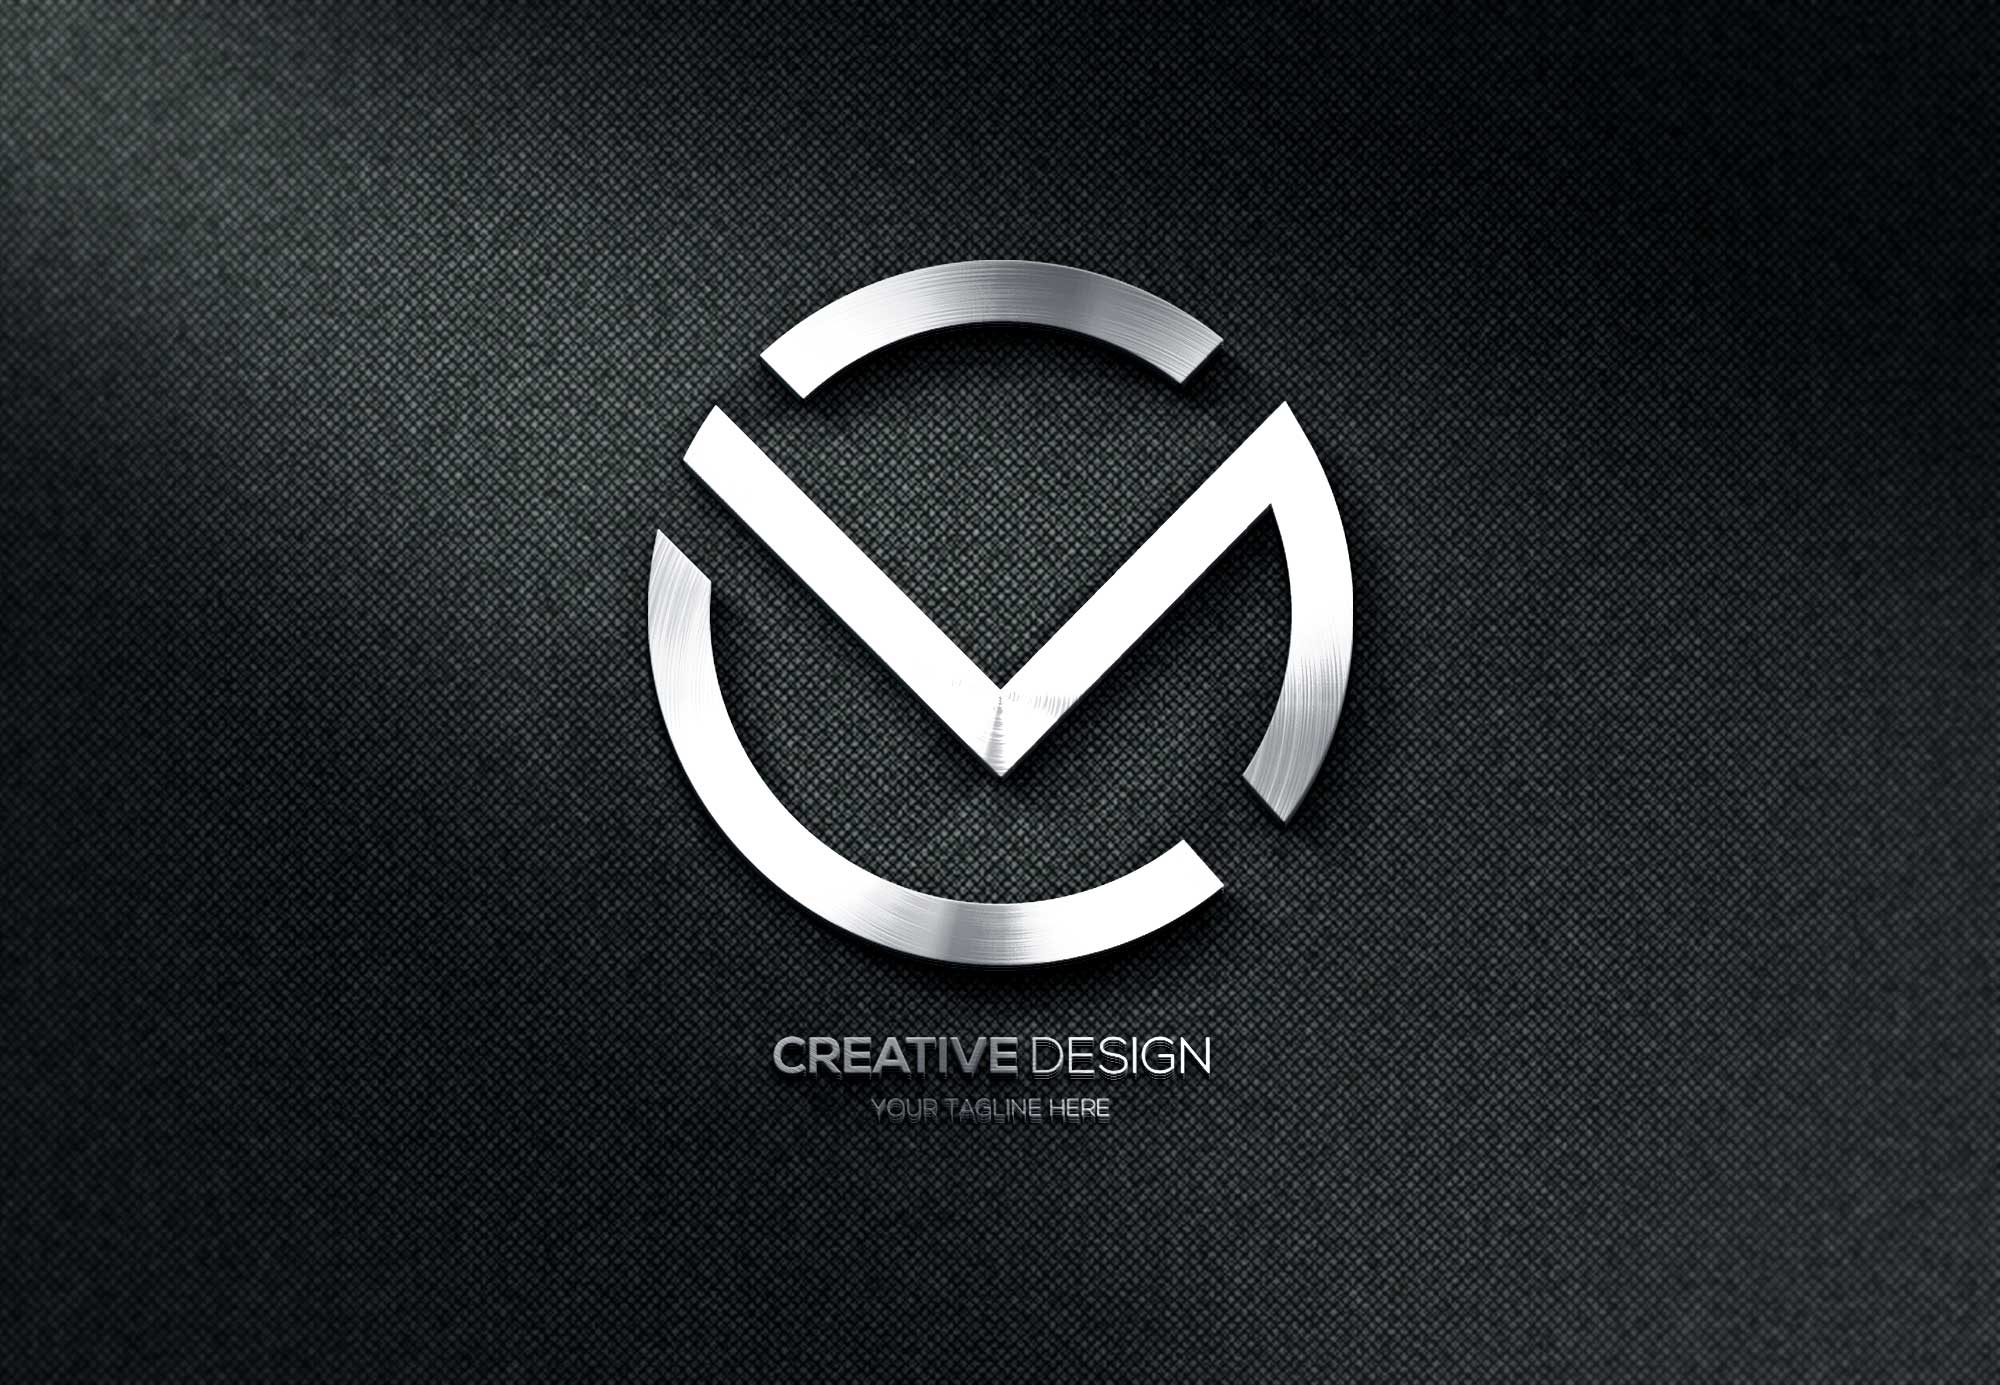 Logo for creative design.